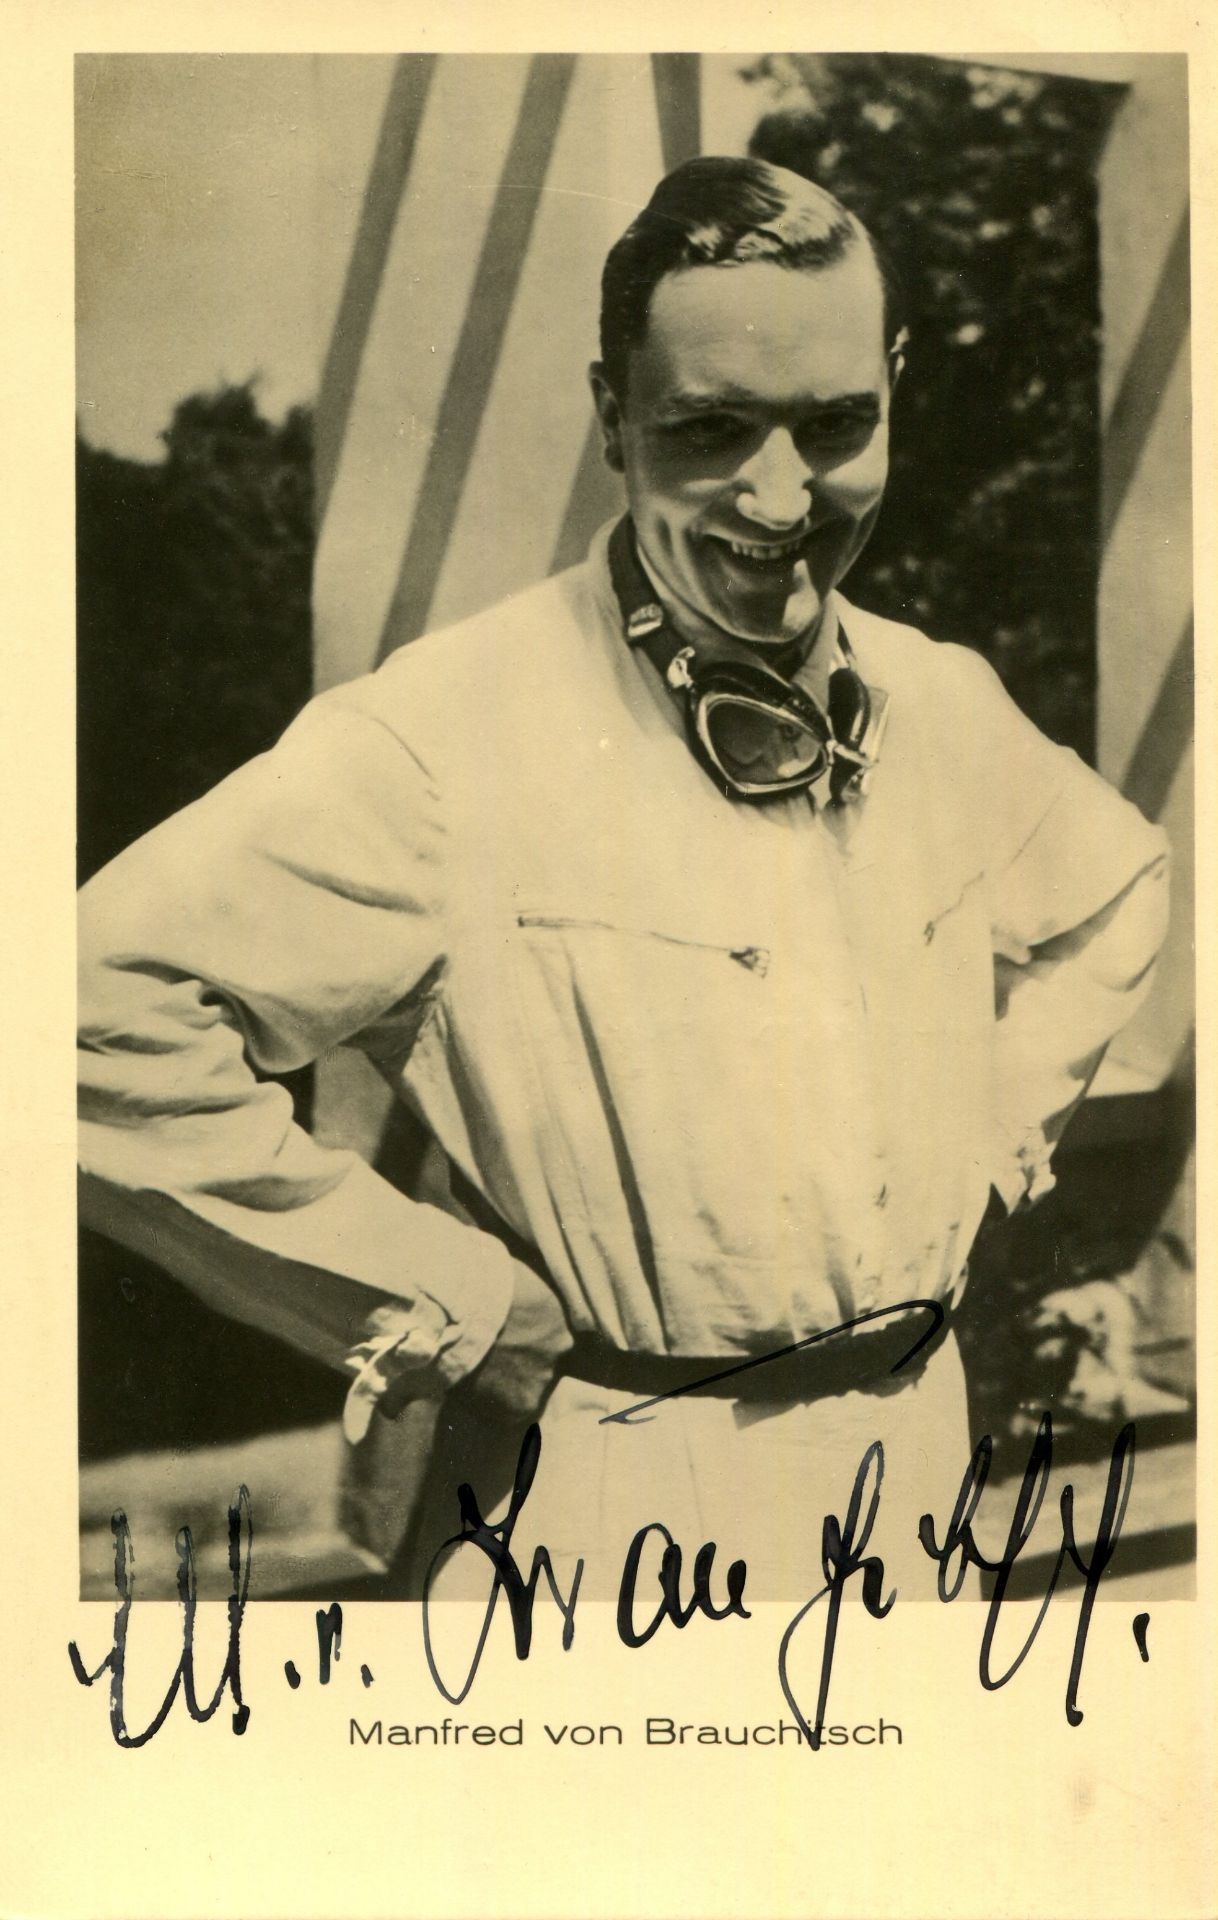 BRAUCHITSCH MANFRED VON: (1905-2003) German motor racing driver of the 1930s.